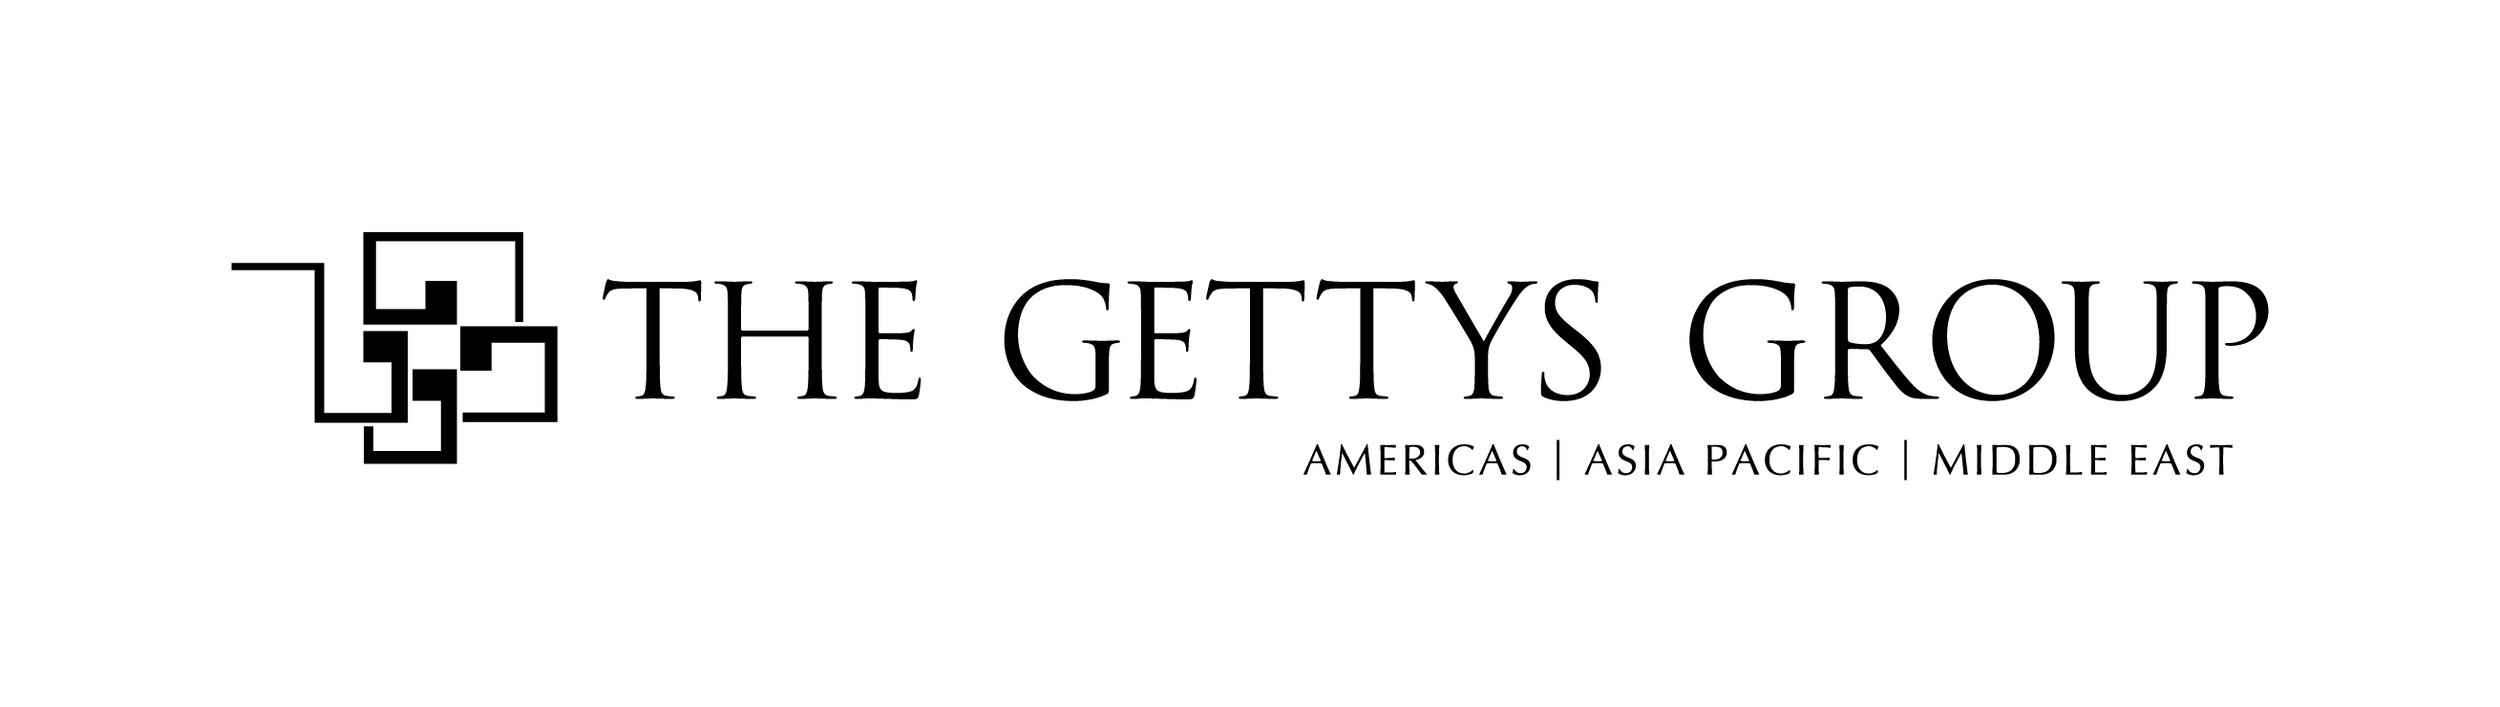 The Gettys Group Logo - Horiz 01 - Black-01.jpg